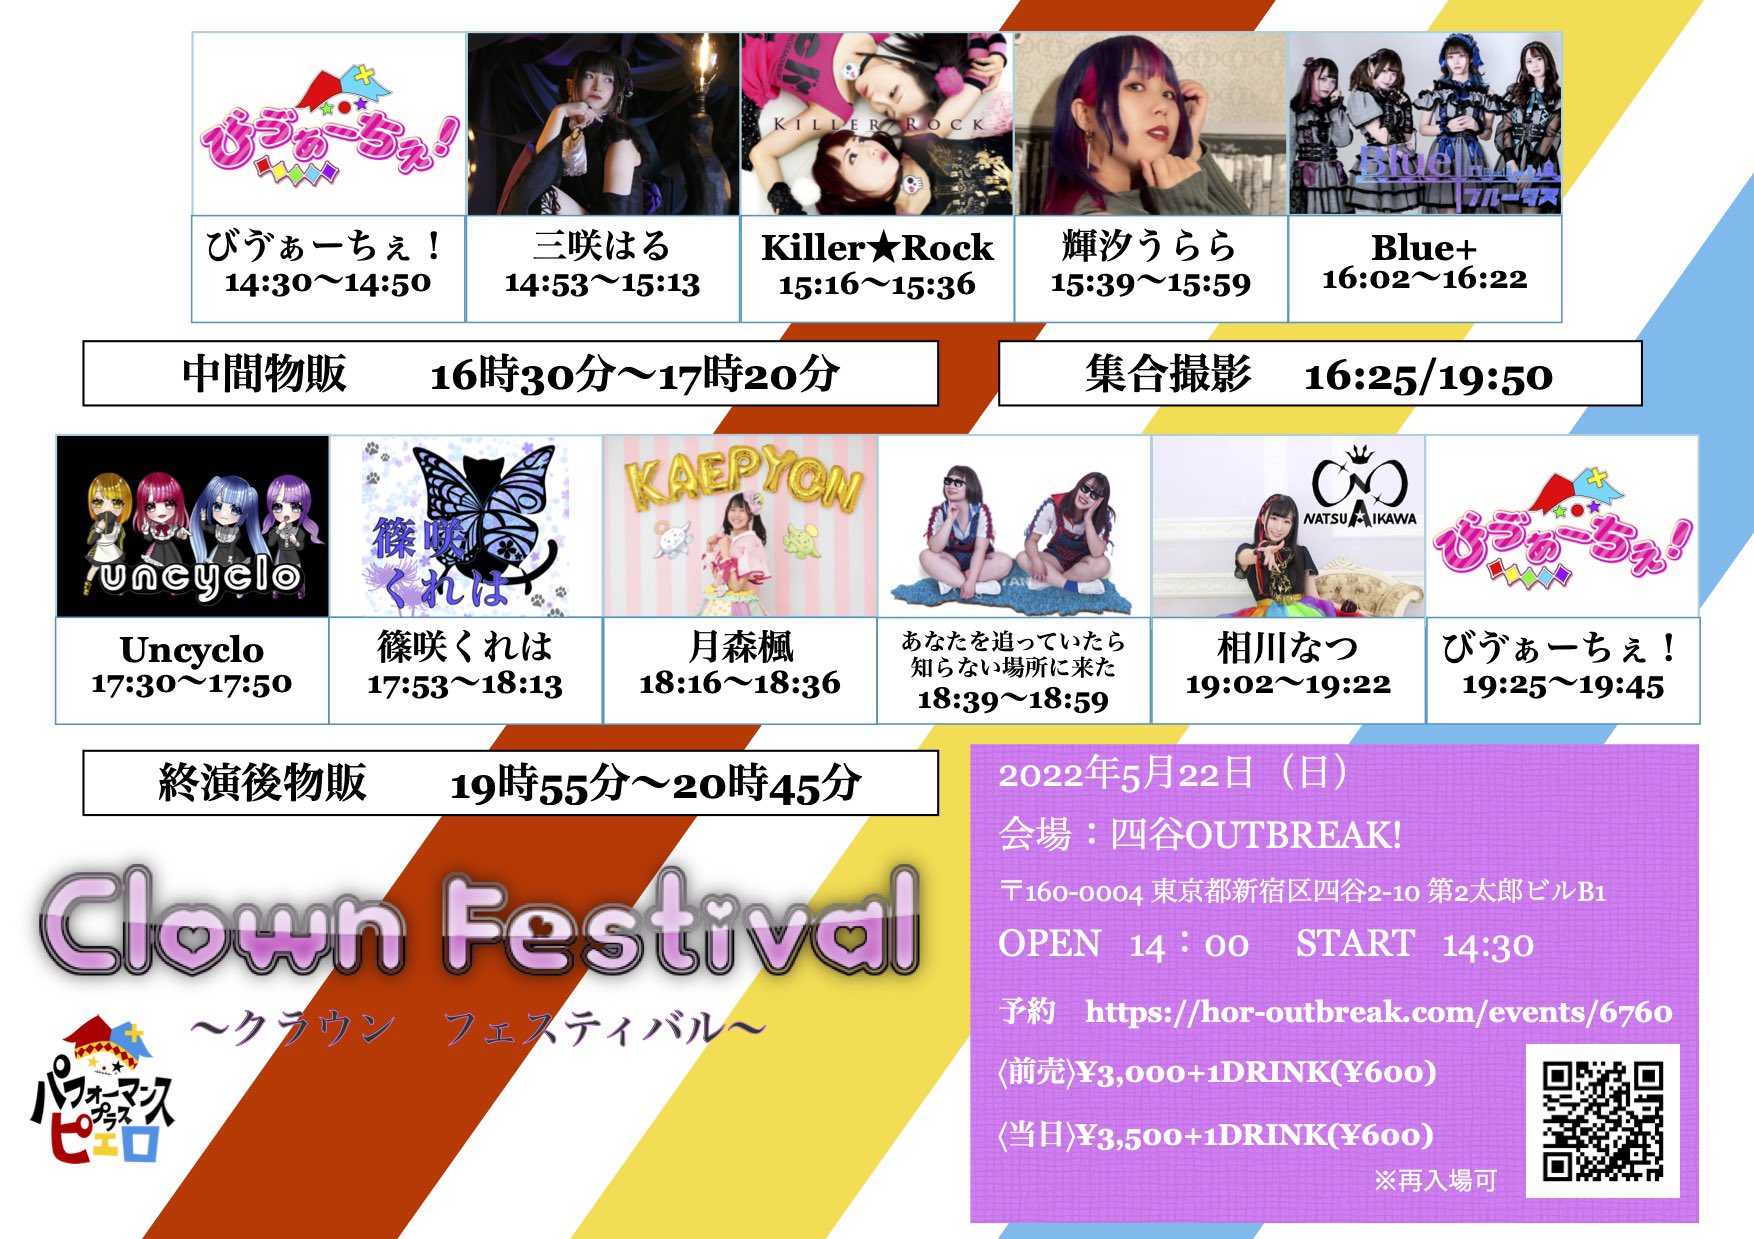 5月22日(日) 「Clown Festival  ~クラウン フェスティバル~」に出演します!!!